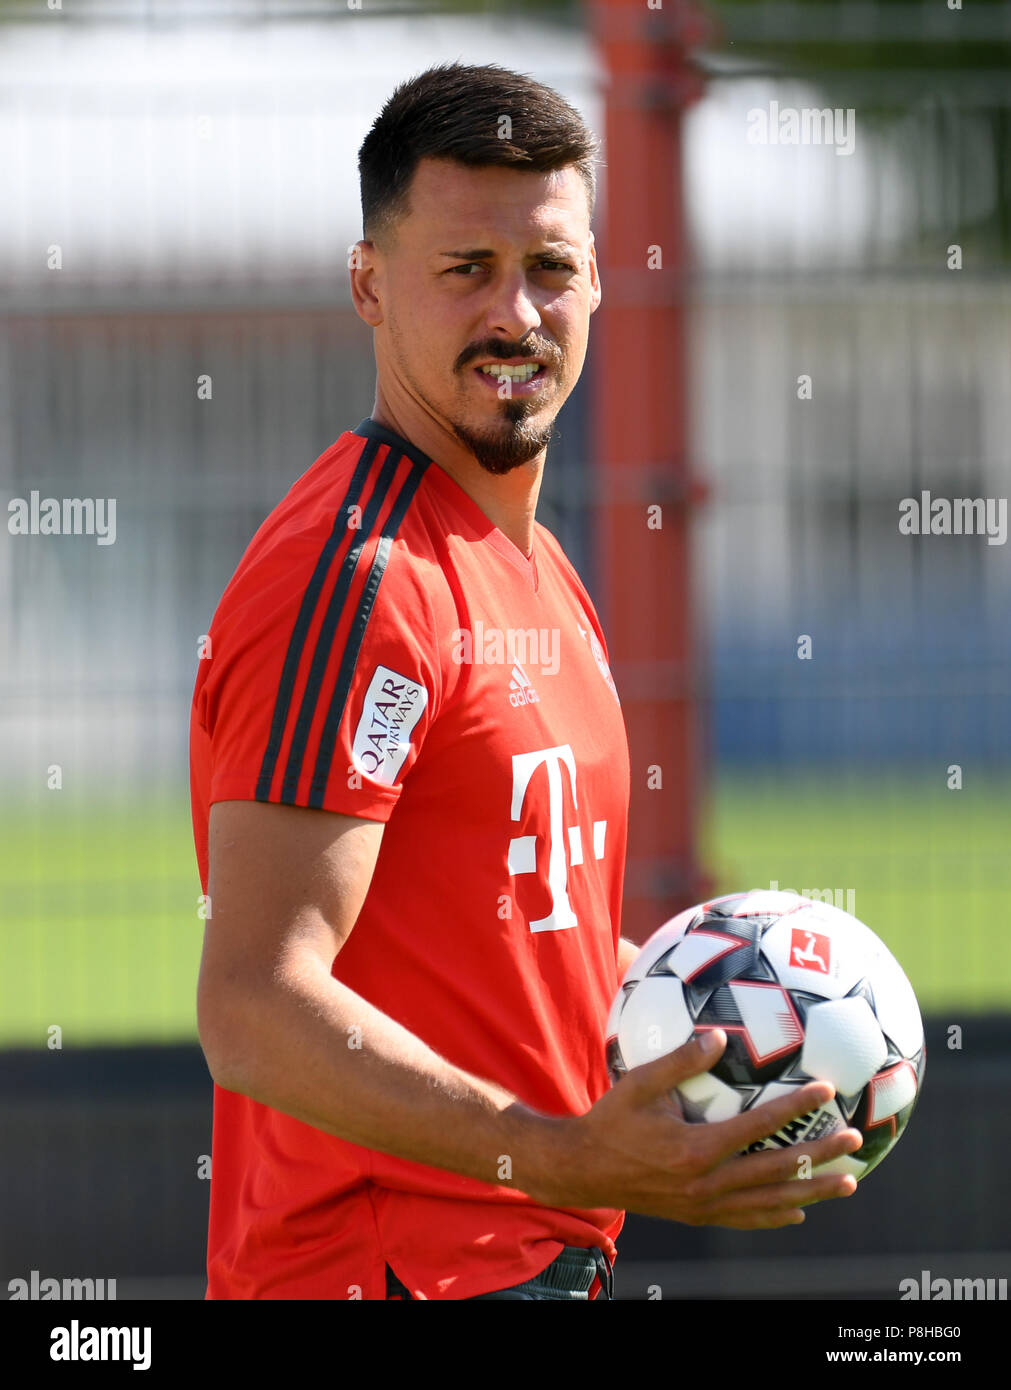 Munich, Germany. 12th July, 2018. Bundesliga, FC Bayern Munich training. Sandro Wagner carrying a ball. Credit: Tobias Hase/dpa/Alamy Live News Stock Photo